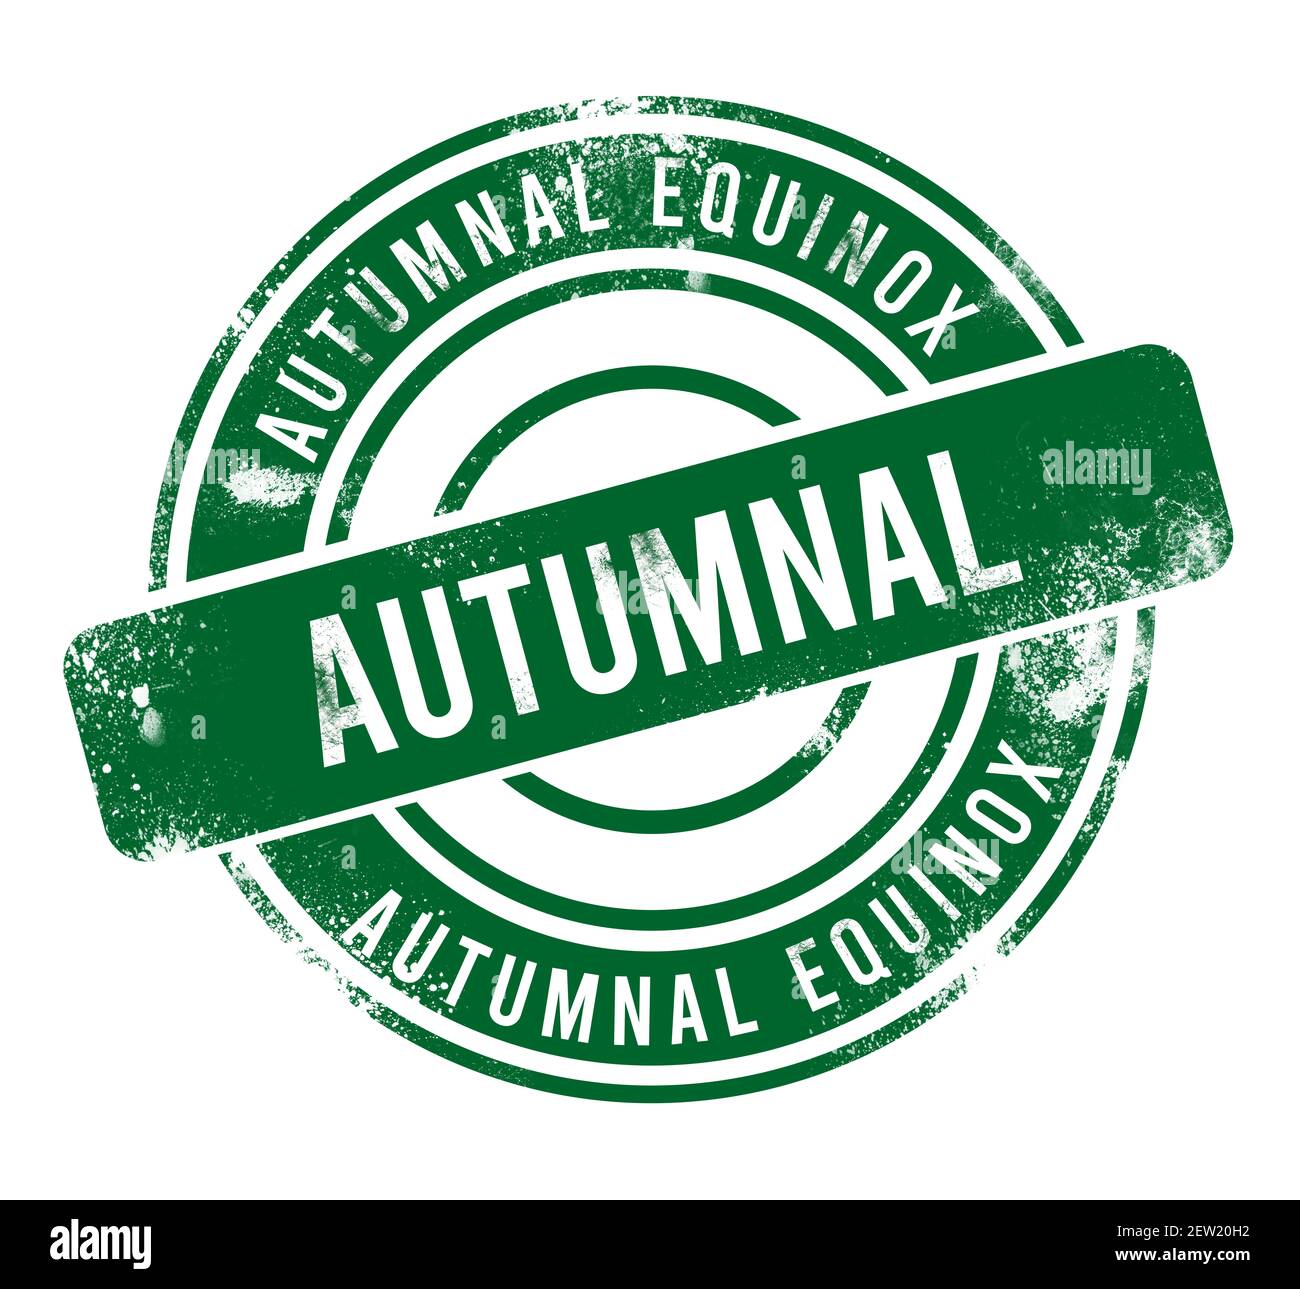 Autumnal Equinox - green round grunge button, stamp Stock Photo